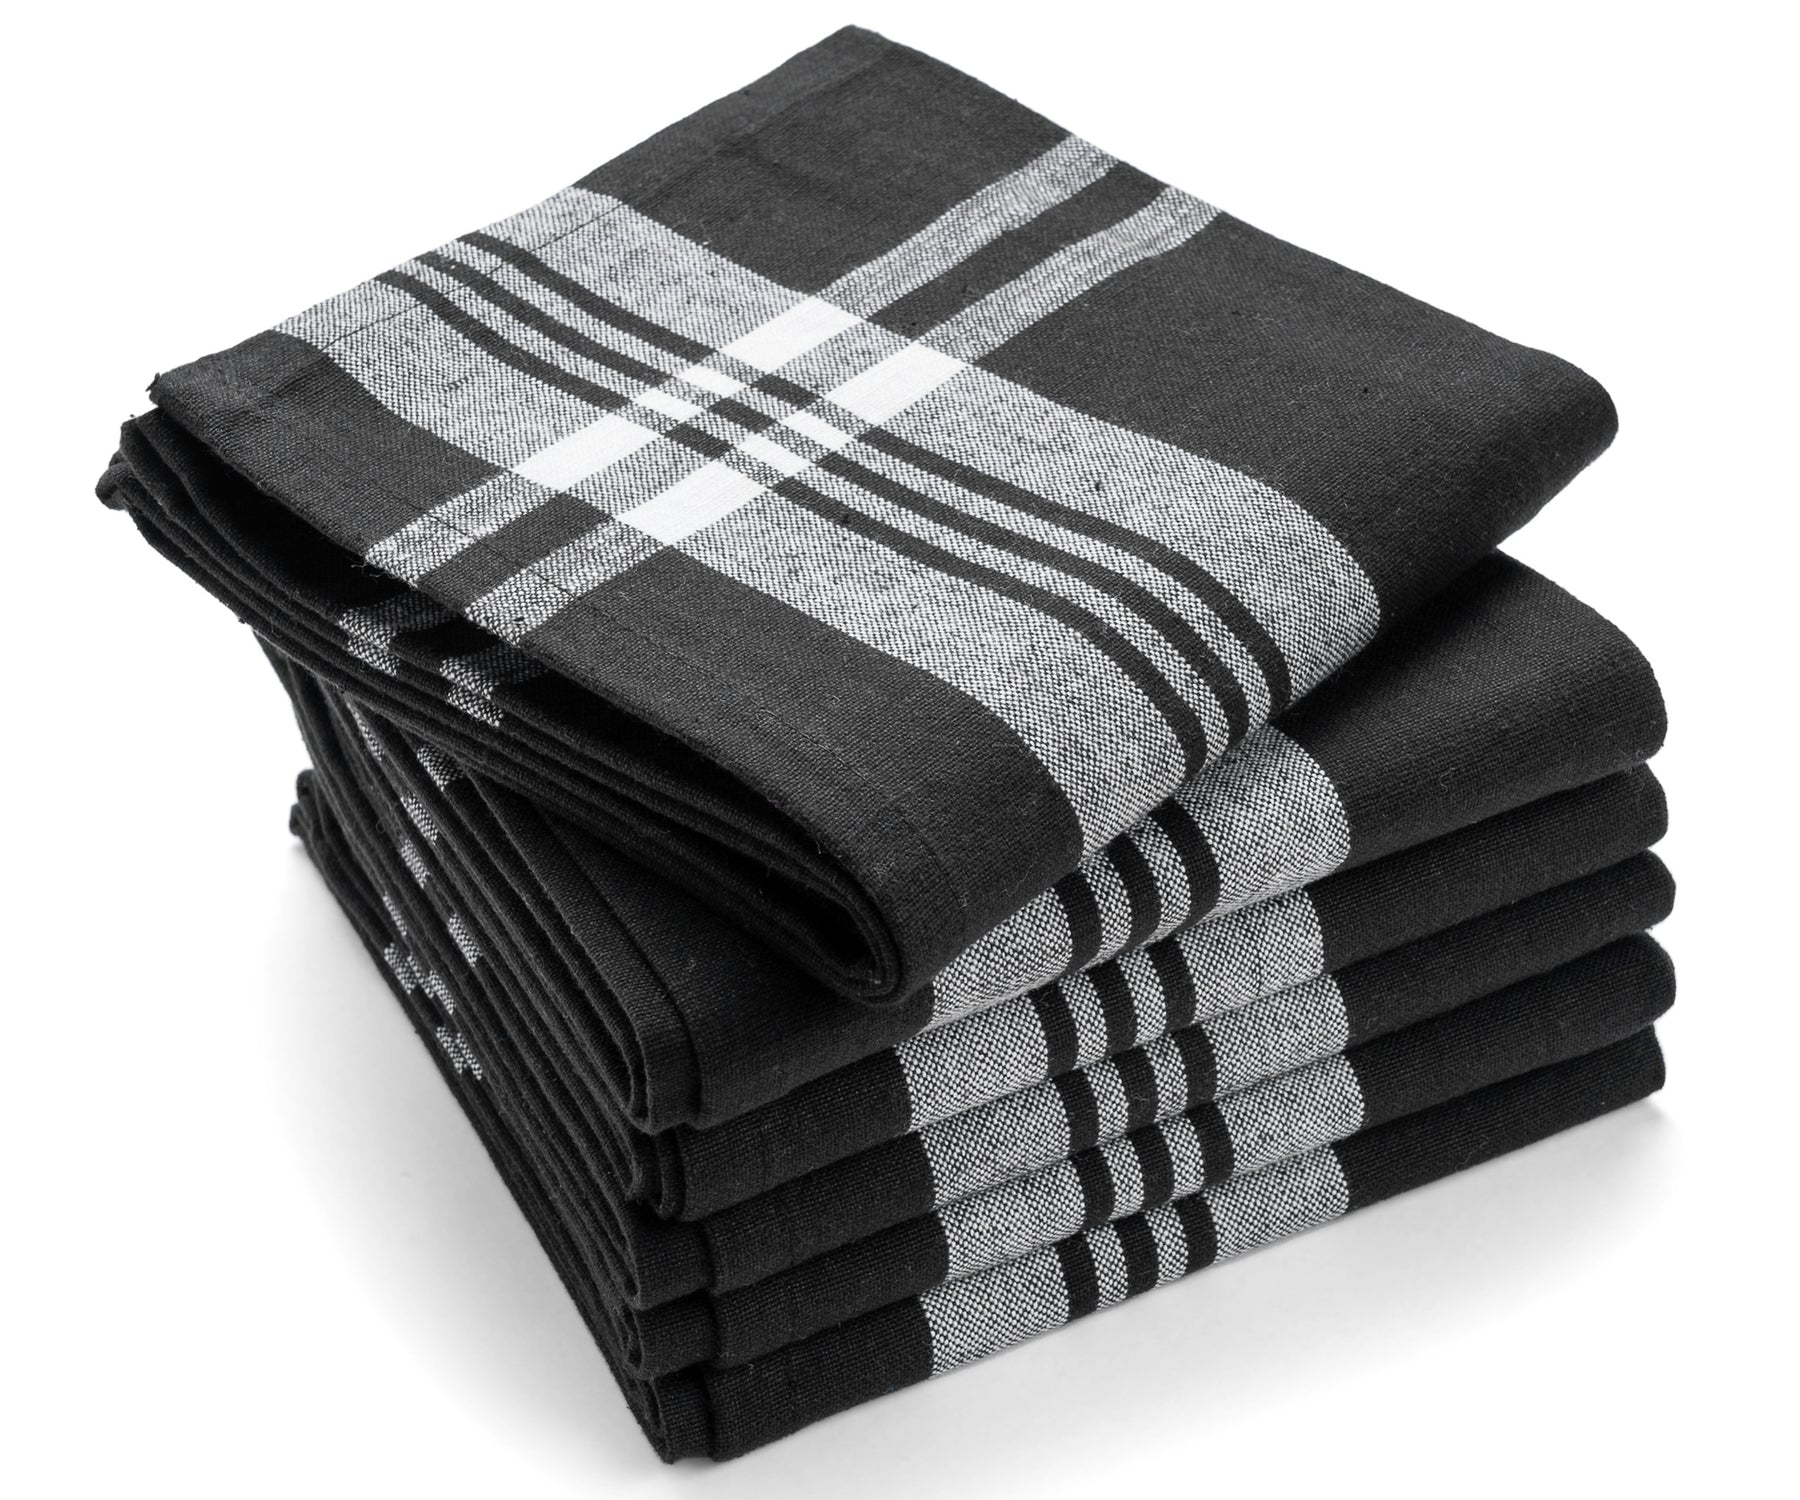 black cotton dish towels black cotton kitchen towels black and white buffalo plaid towels black plaid dish cloths